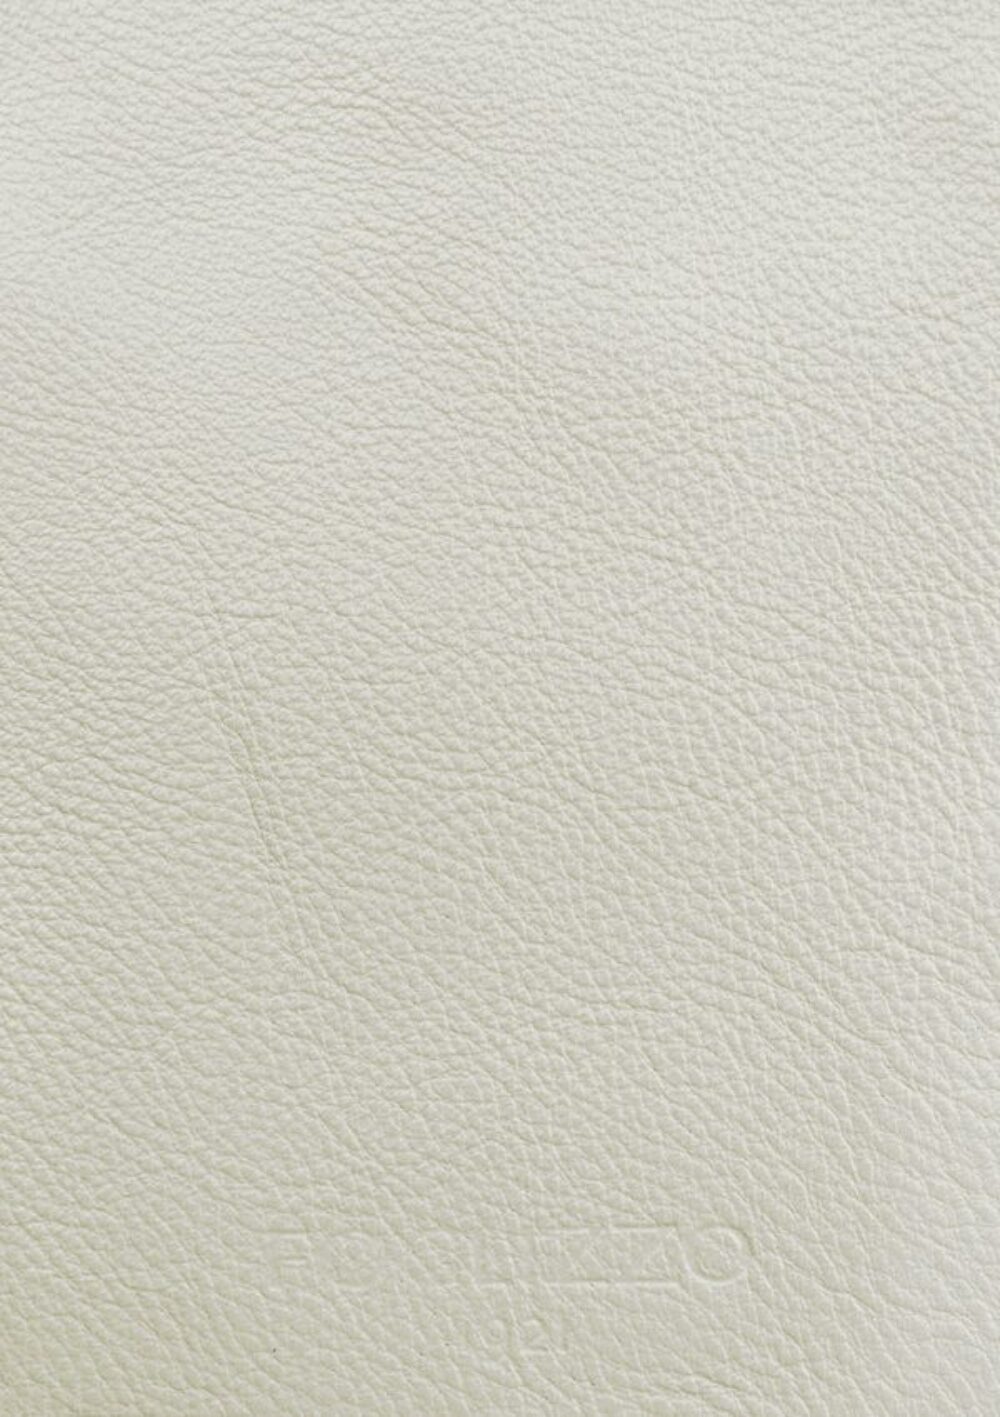 Diseño de lujo y alfombras de alta gama hechas a medida • Basic Pearl White Jade